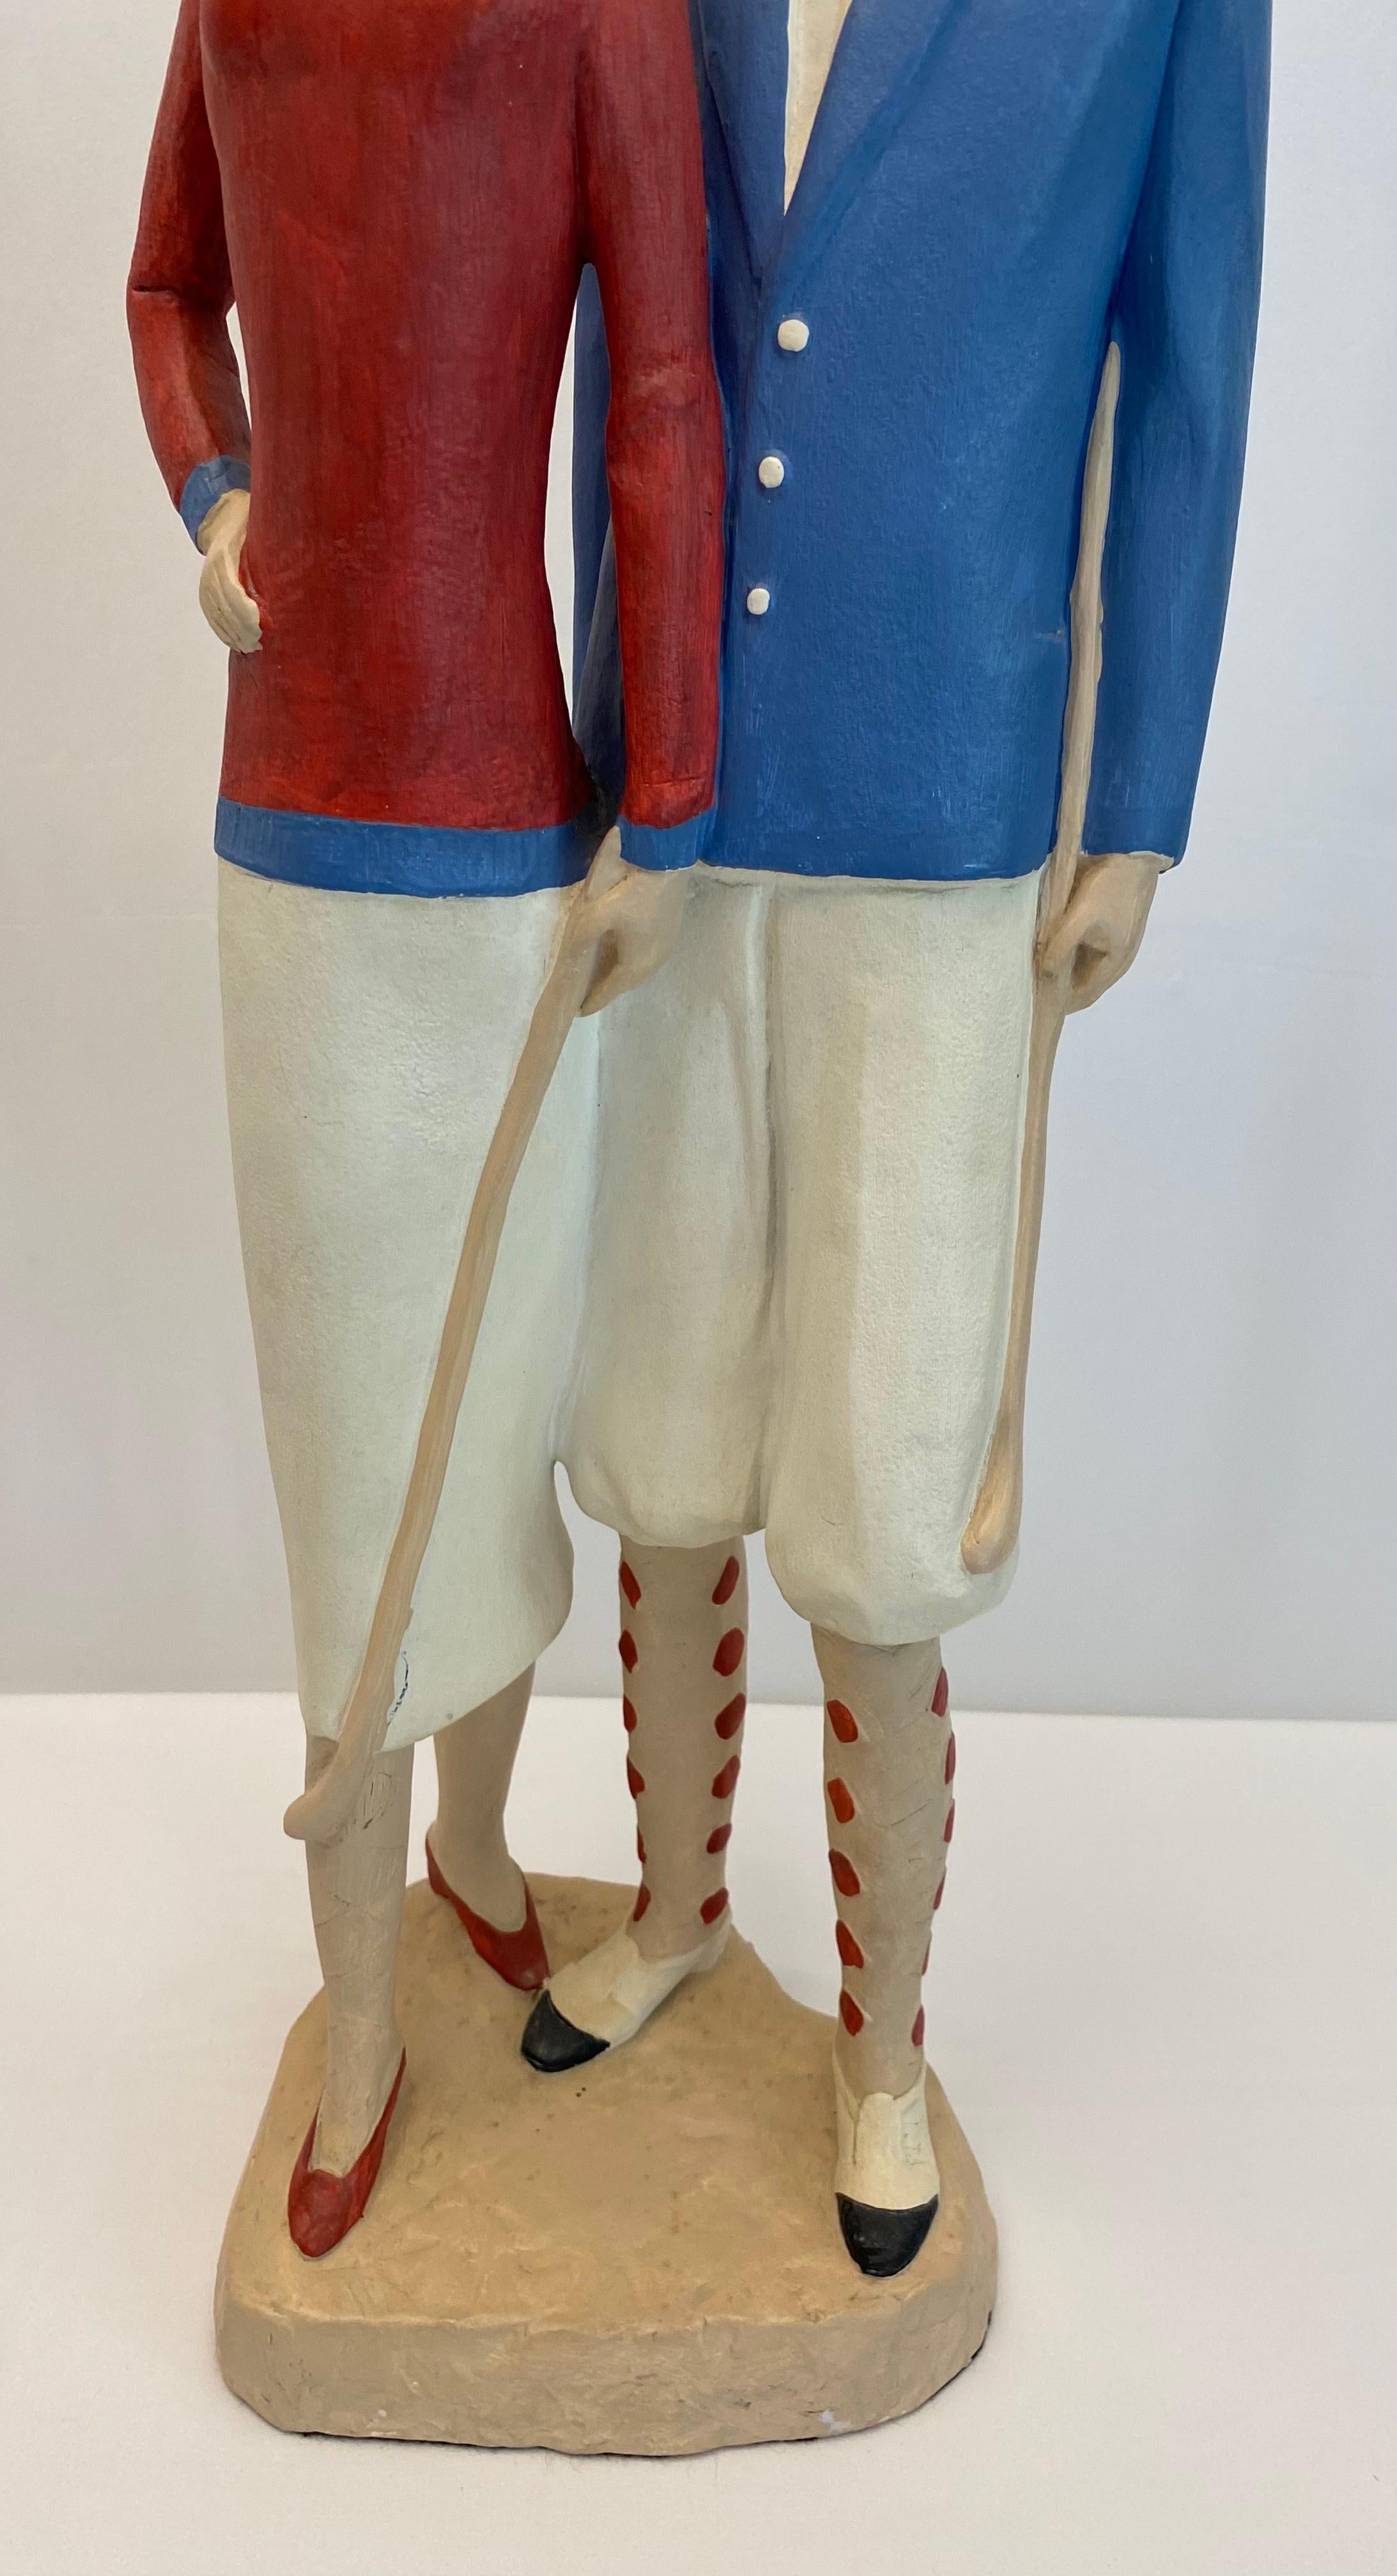 Nous vous proposons une magnifique sculpture de table représentant deux golfeurs, datée de 1987. 
Cette sculpture décorative de style Art déco est construite en plâtre et est délicieusement lourde. Moulés et peints à la main. 

C'est un cadeau